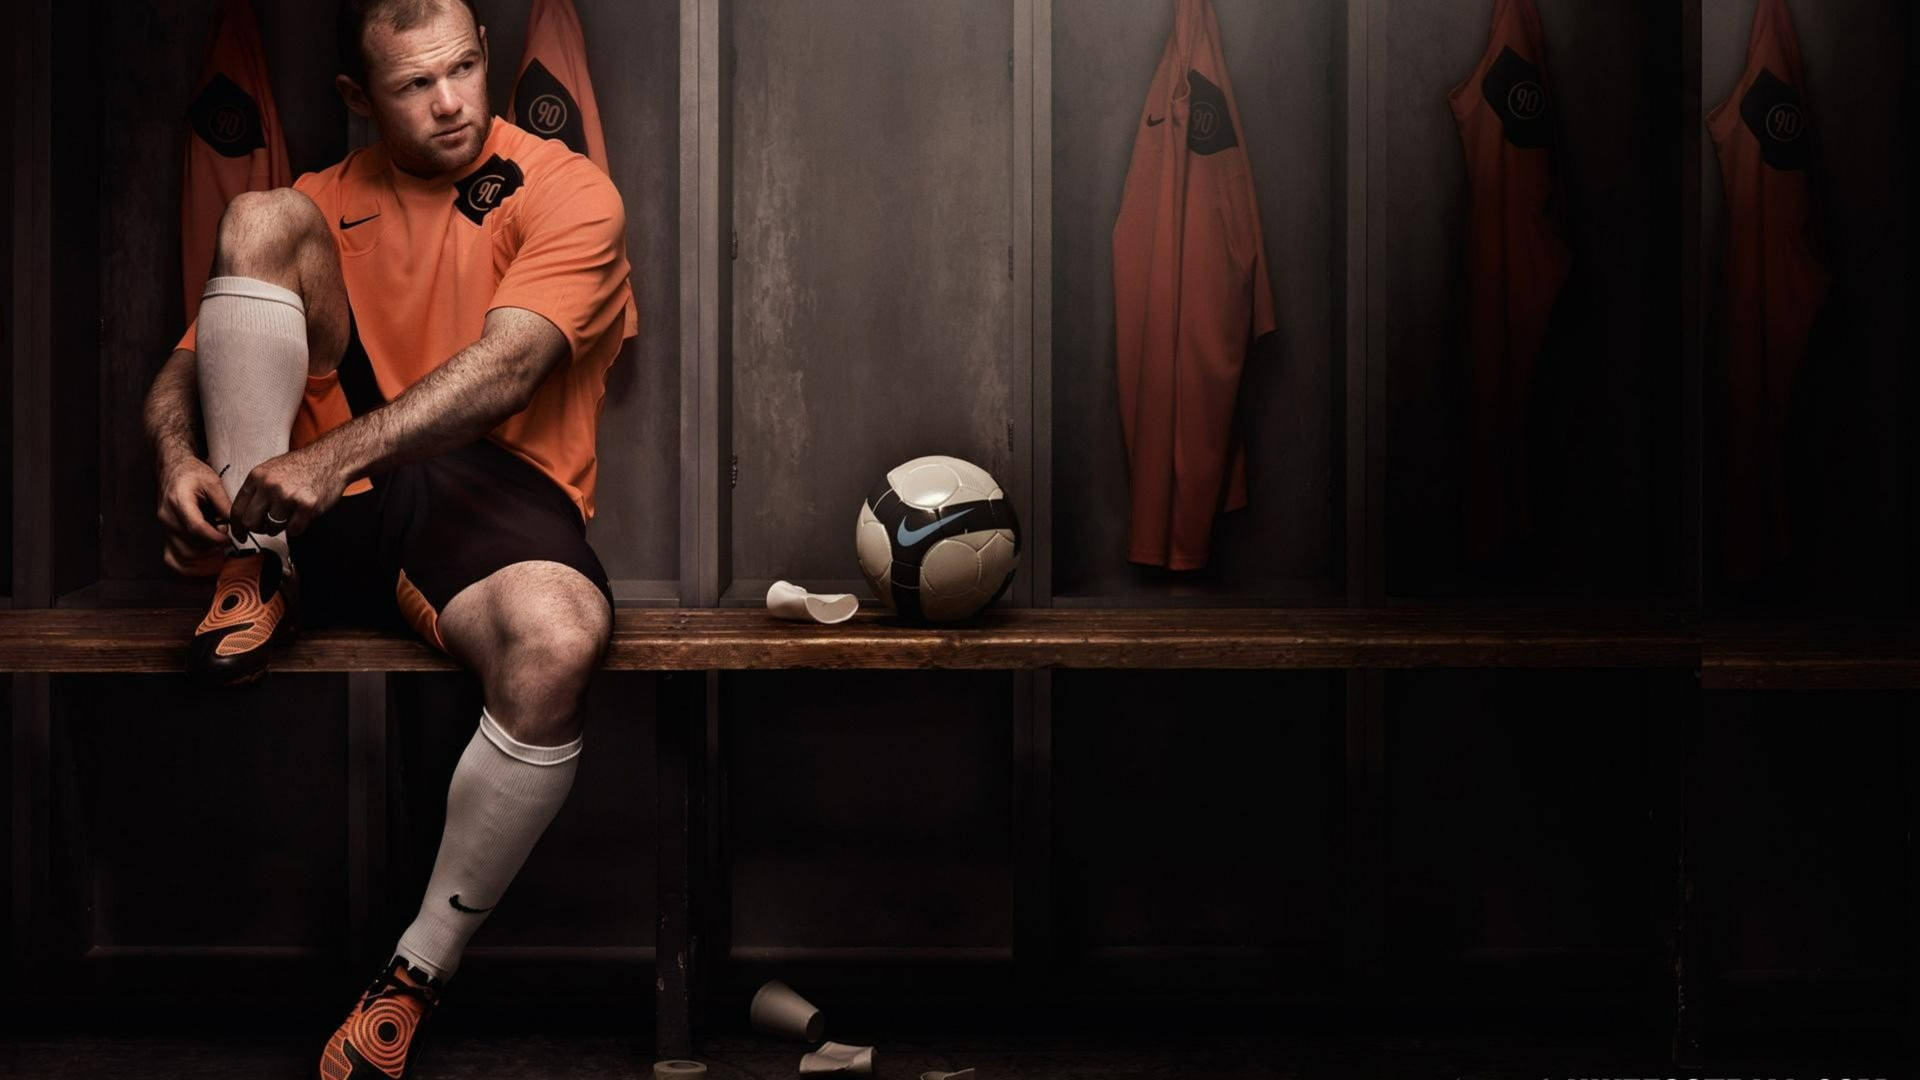 Wayne Rooney Nike Locker Room Background